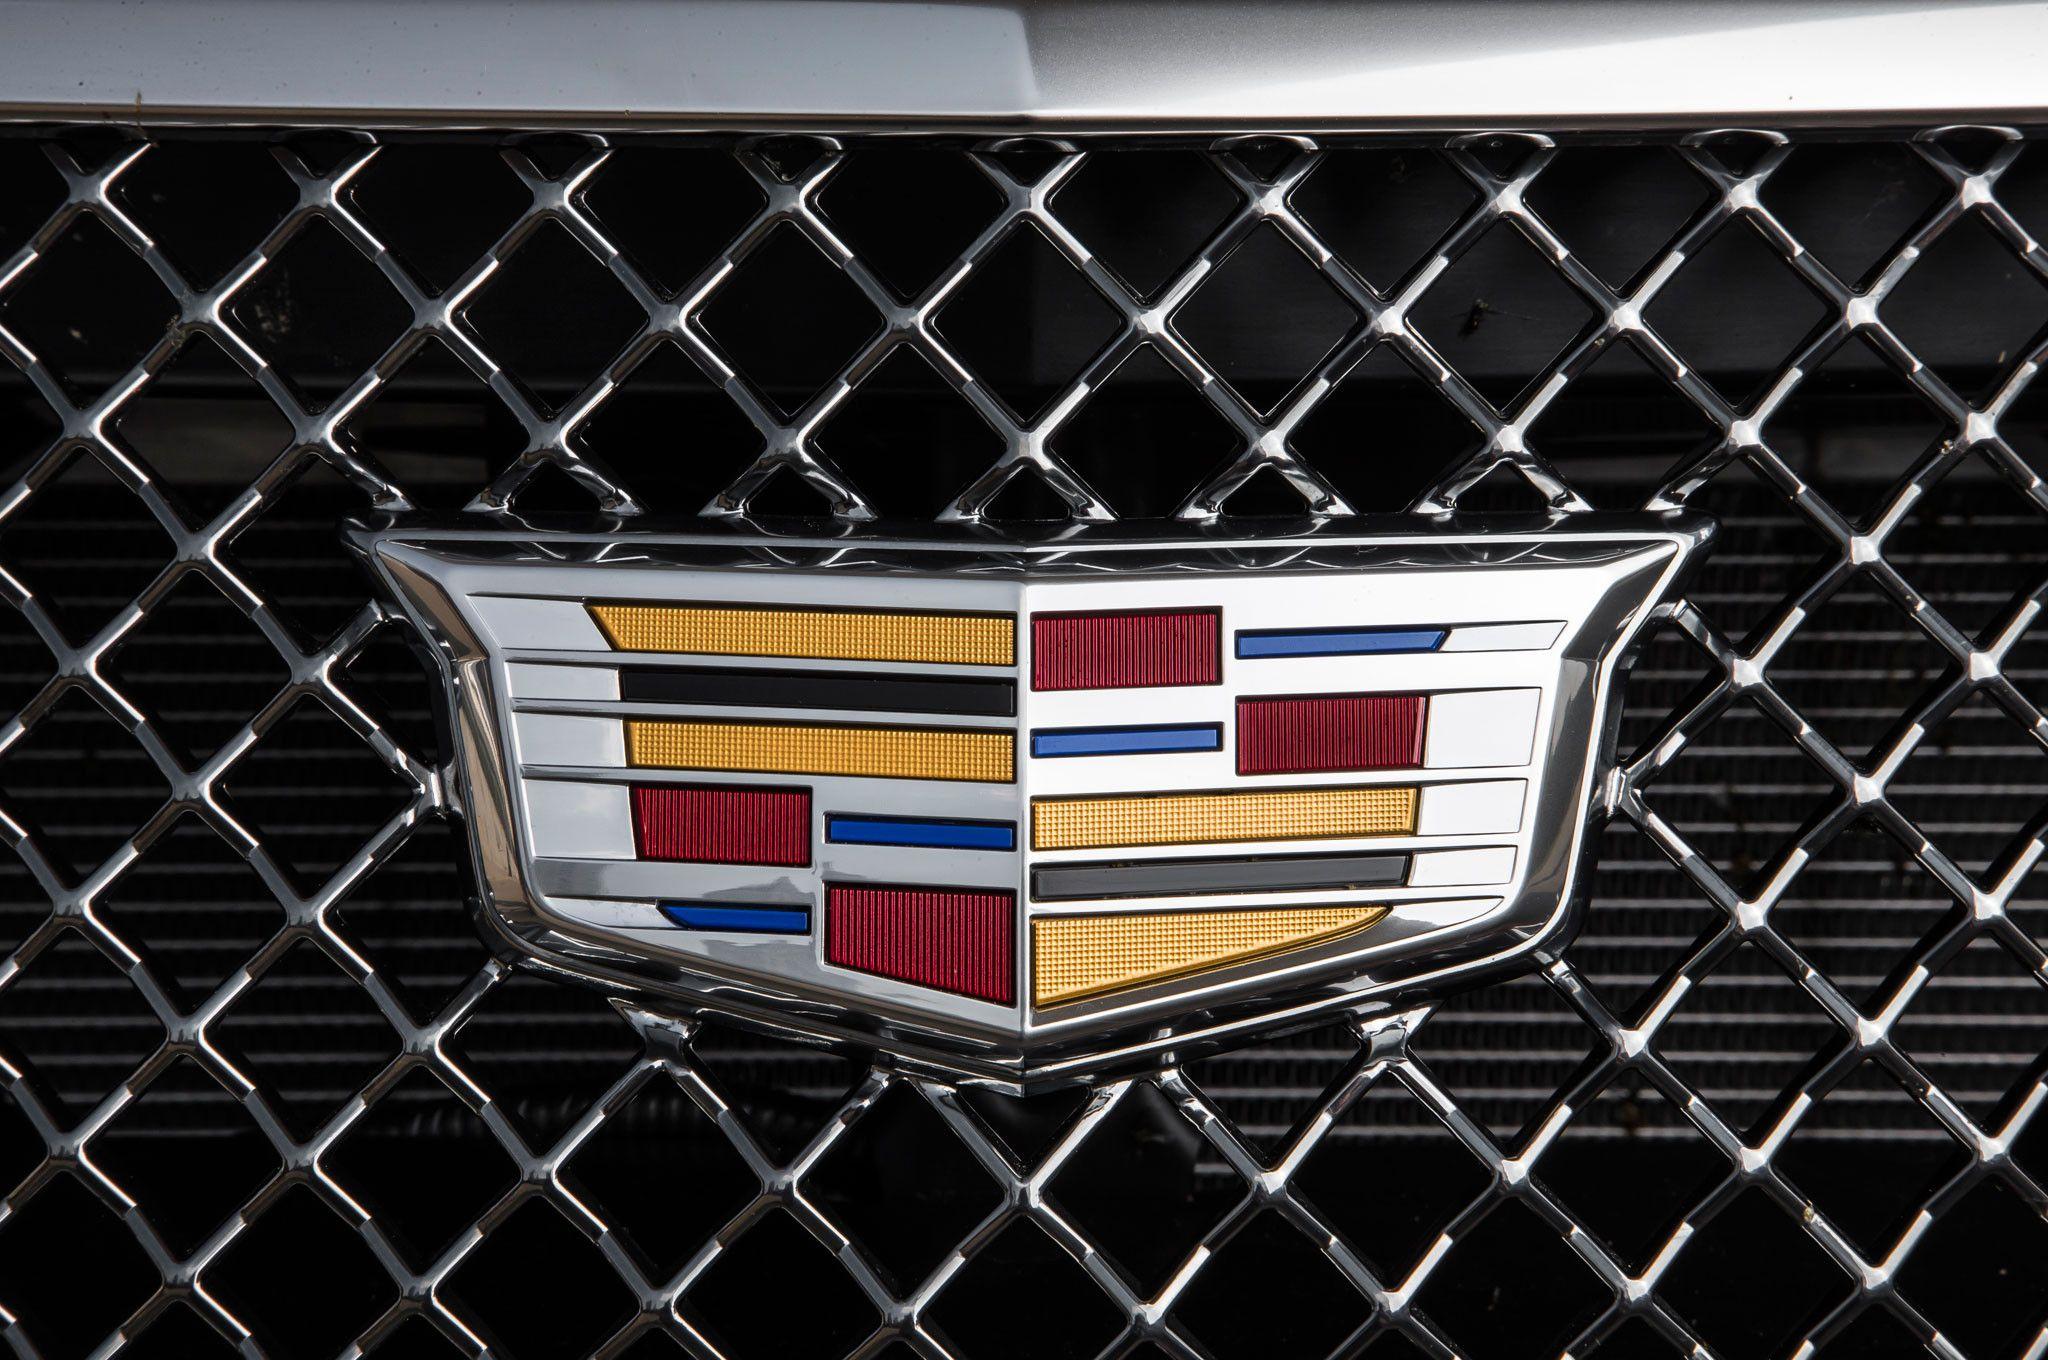 2016 New Cadillac Logo - Cadillac Cts V Logo New Alive and Kicking 2016 Cadillac Cts V Review